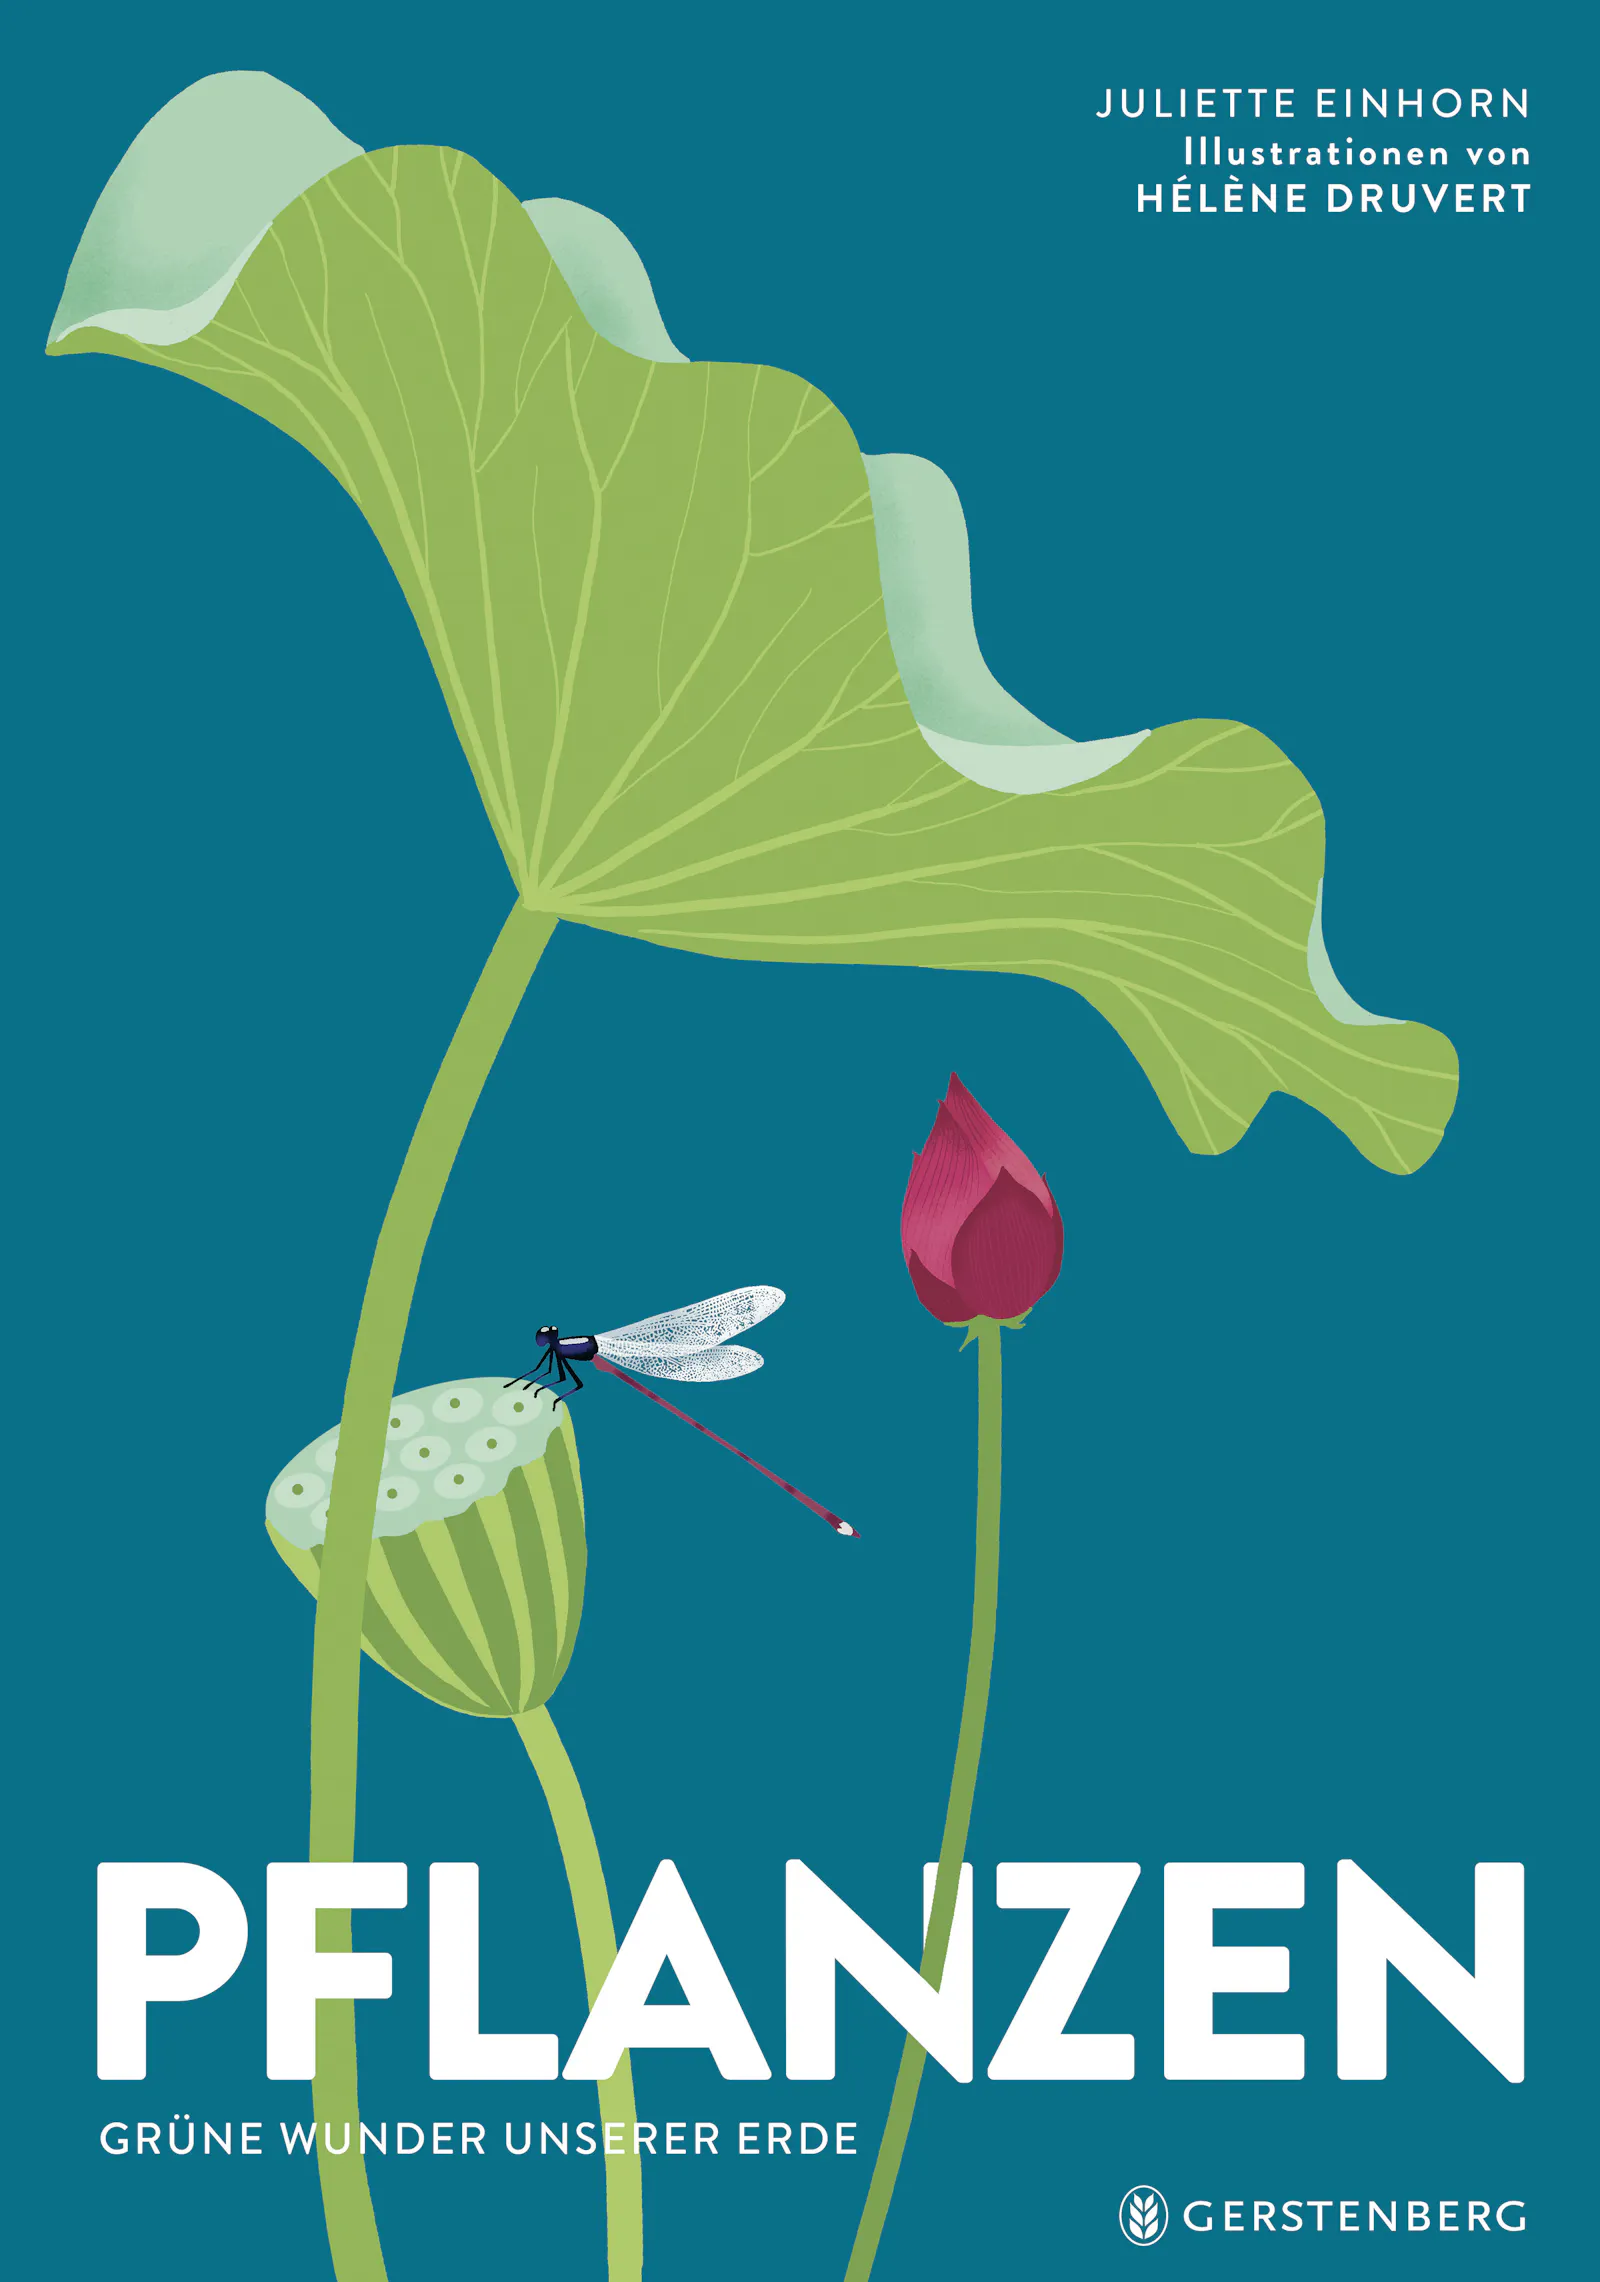 Cover von "Pflanzen - Grüne Wunder unserer Erde" von Juliette Einhorn und Hélène Druvert aus dem Gerstenberg Verlag